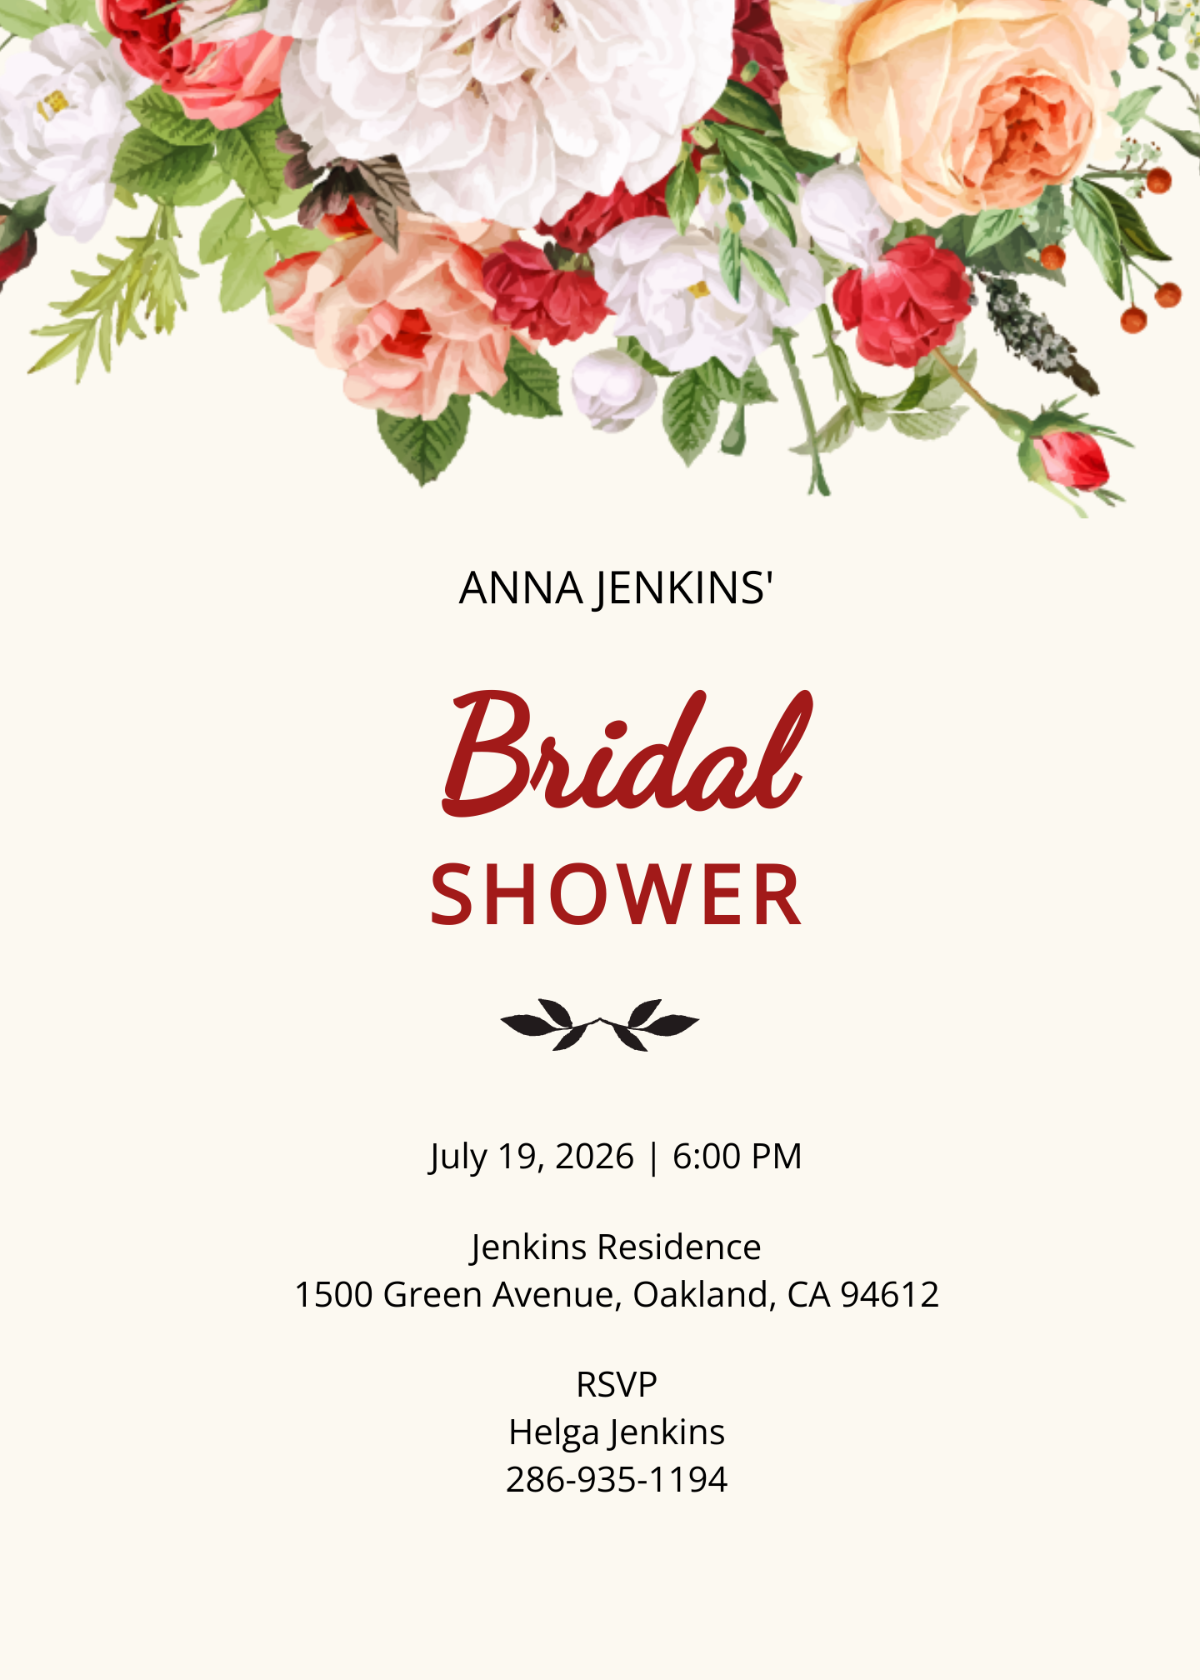 Wildflower Bridal Shower Invitation